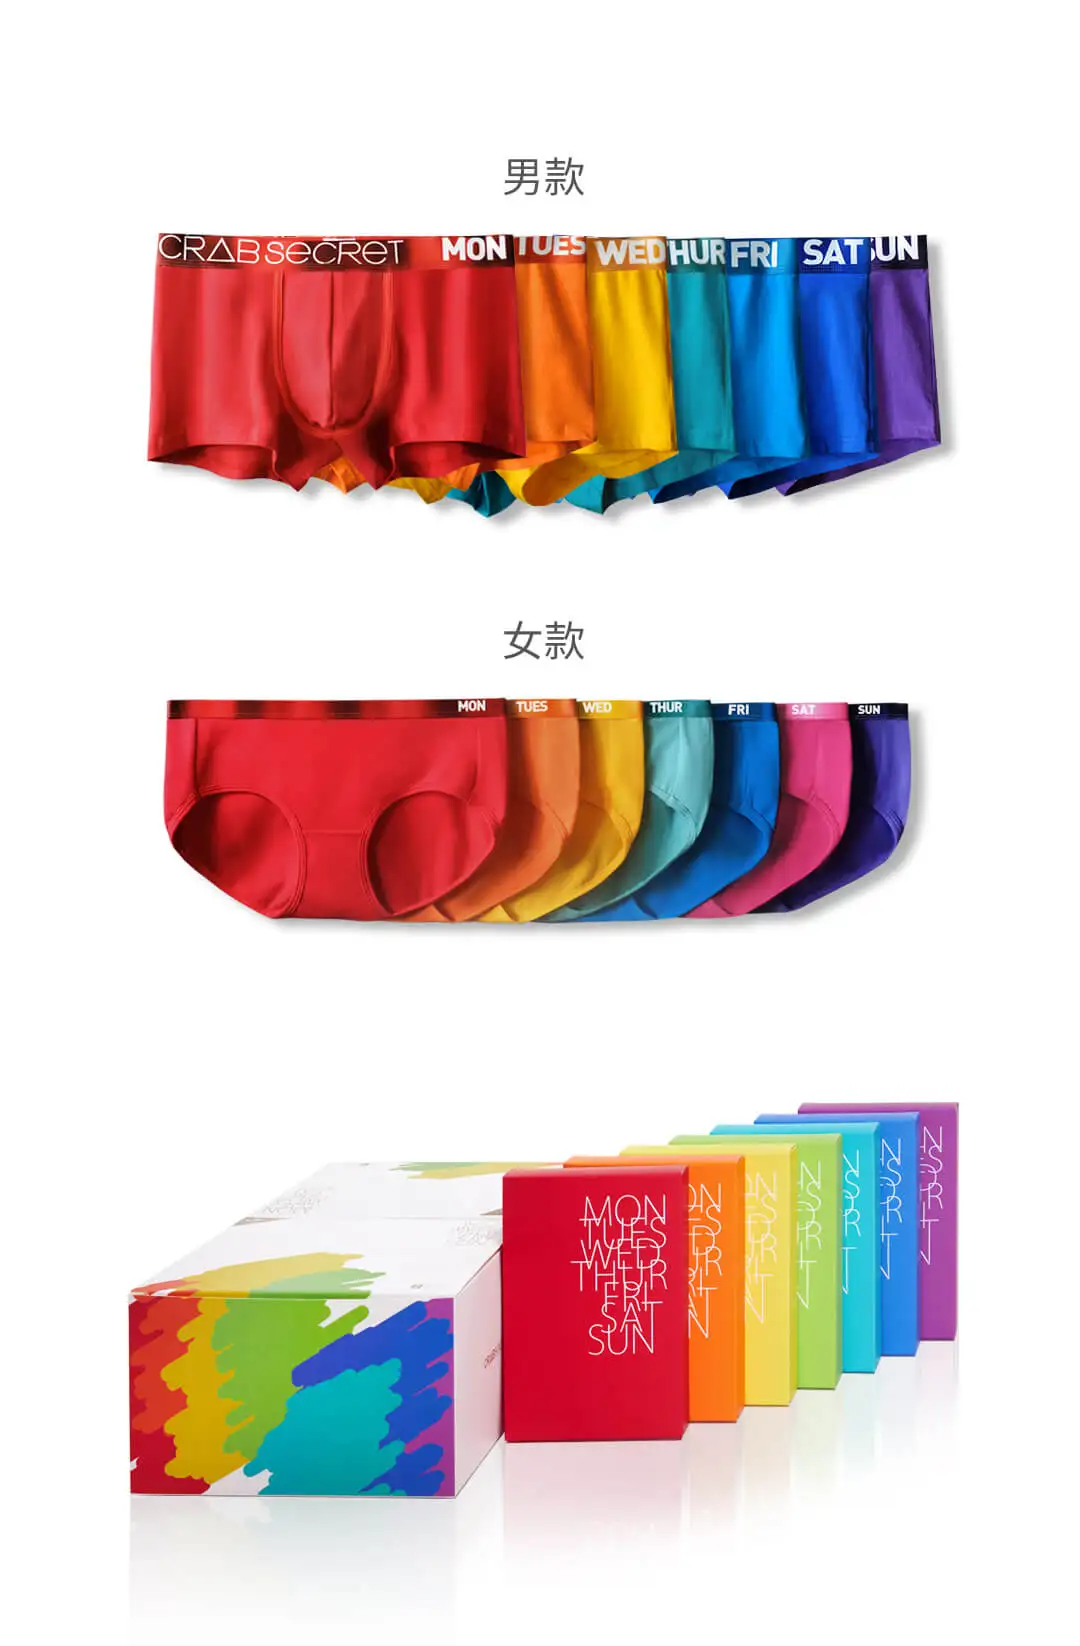 7 шт. Xiaomi Youpin Краб секретная пара недели трусики Подарочная коробка близость и лазер для кожи ремень цвет яркий цвет совпадающий подарочный пакет